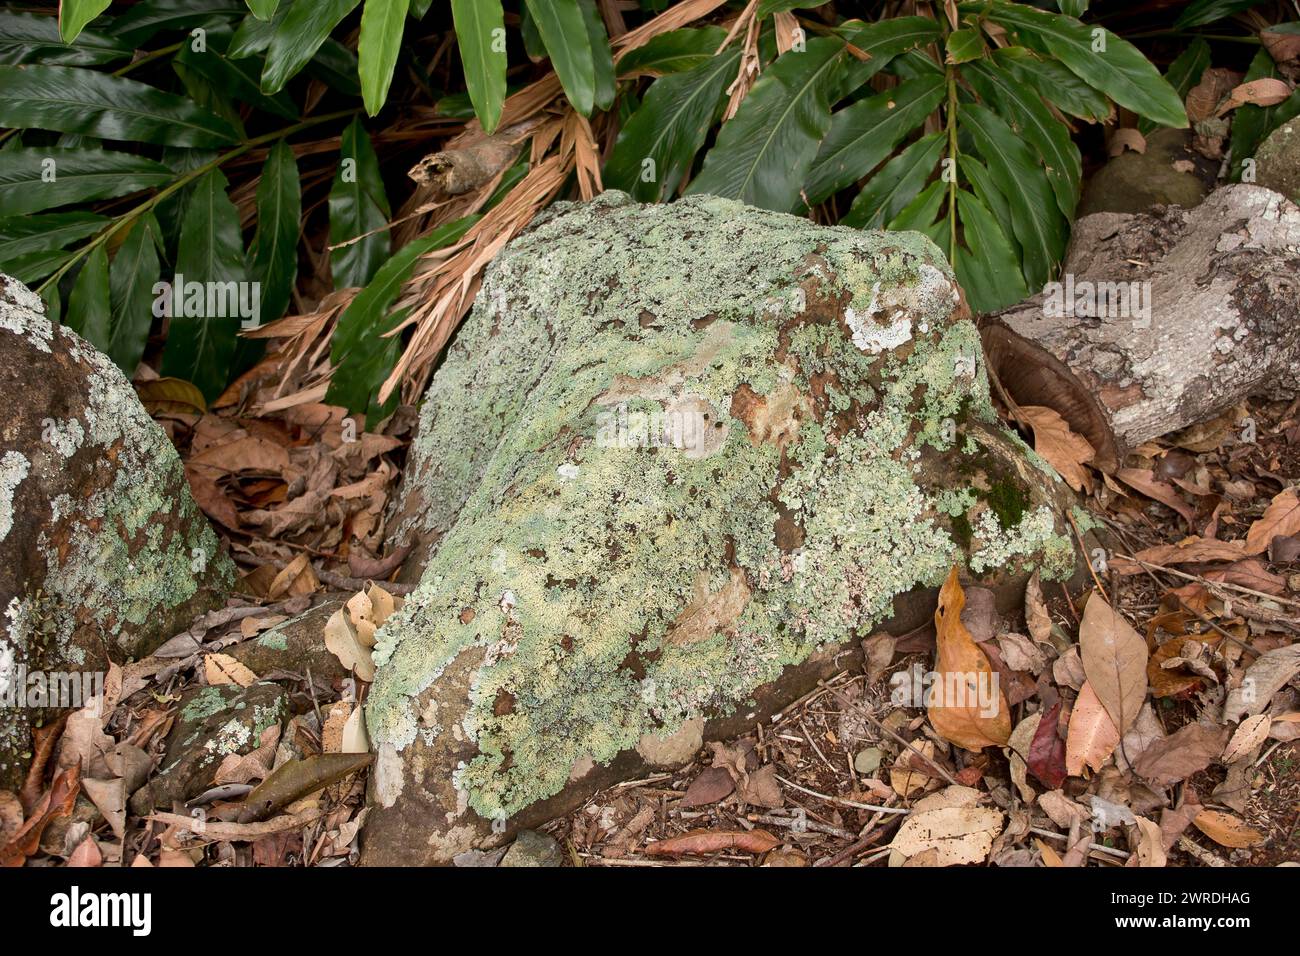 Basaltblöcke auf dem Boden des subtropischen Regenwaldes in Queensland, Australien. Felsen, die fast vollständig mit blassgrünen und weißen Flechten bedeckt sind. Stockfoto